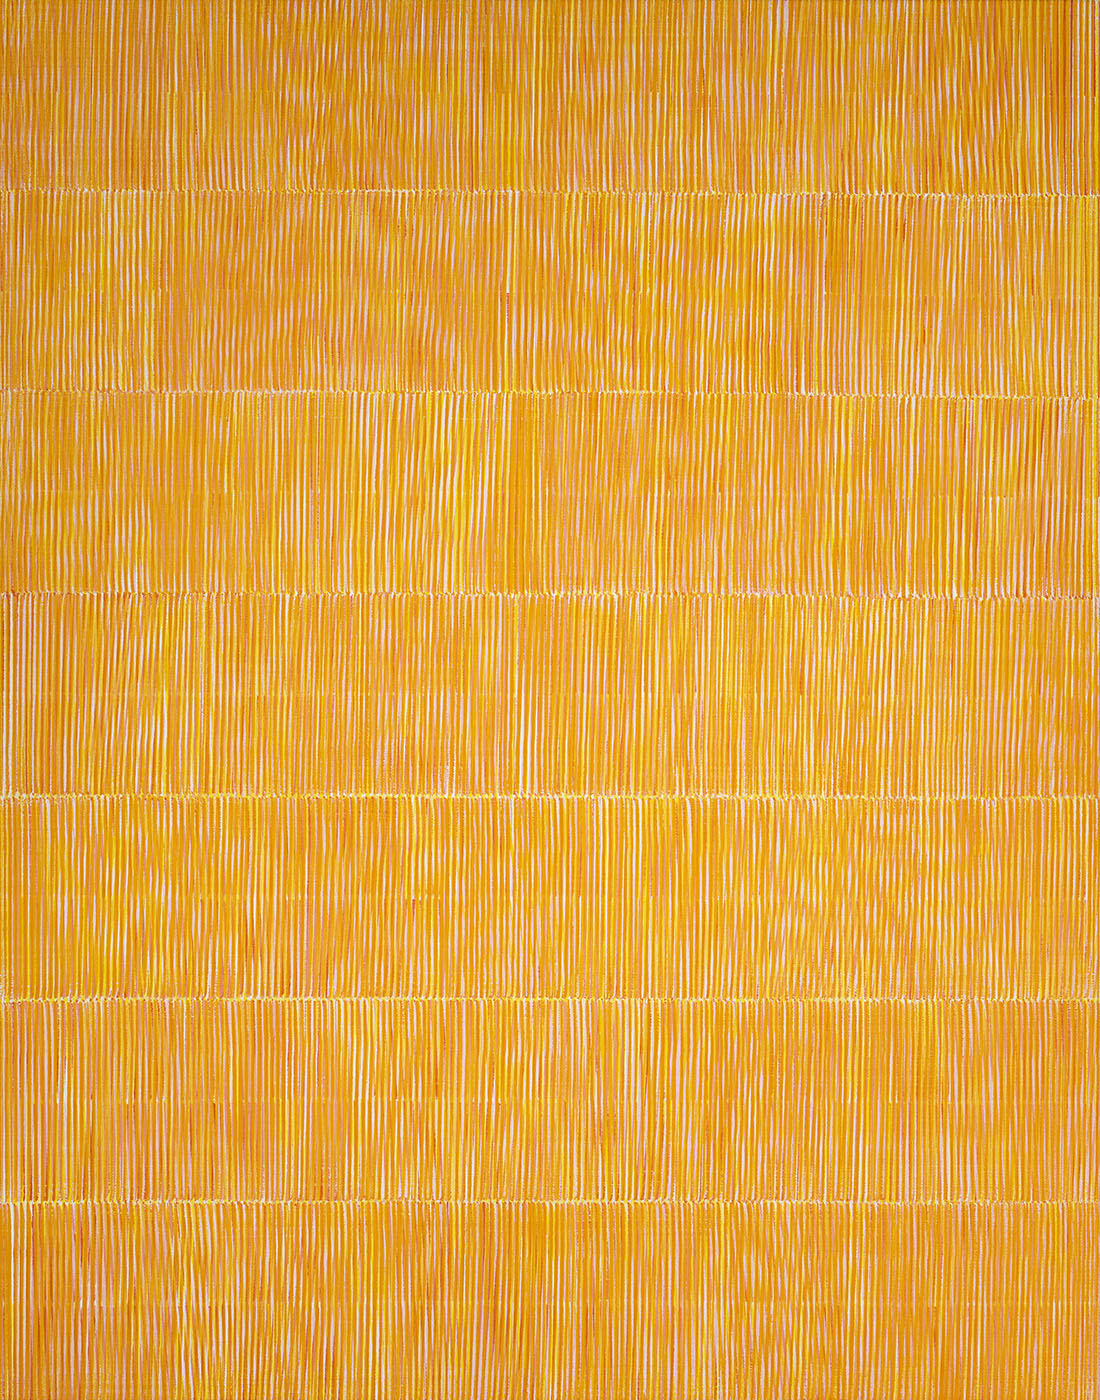 Nikola Dimitrov, Rhythmen OrangeGelb, 2023, Pigmente, Bindemittel auf Leinwand, 140 × 110 cm